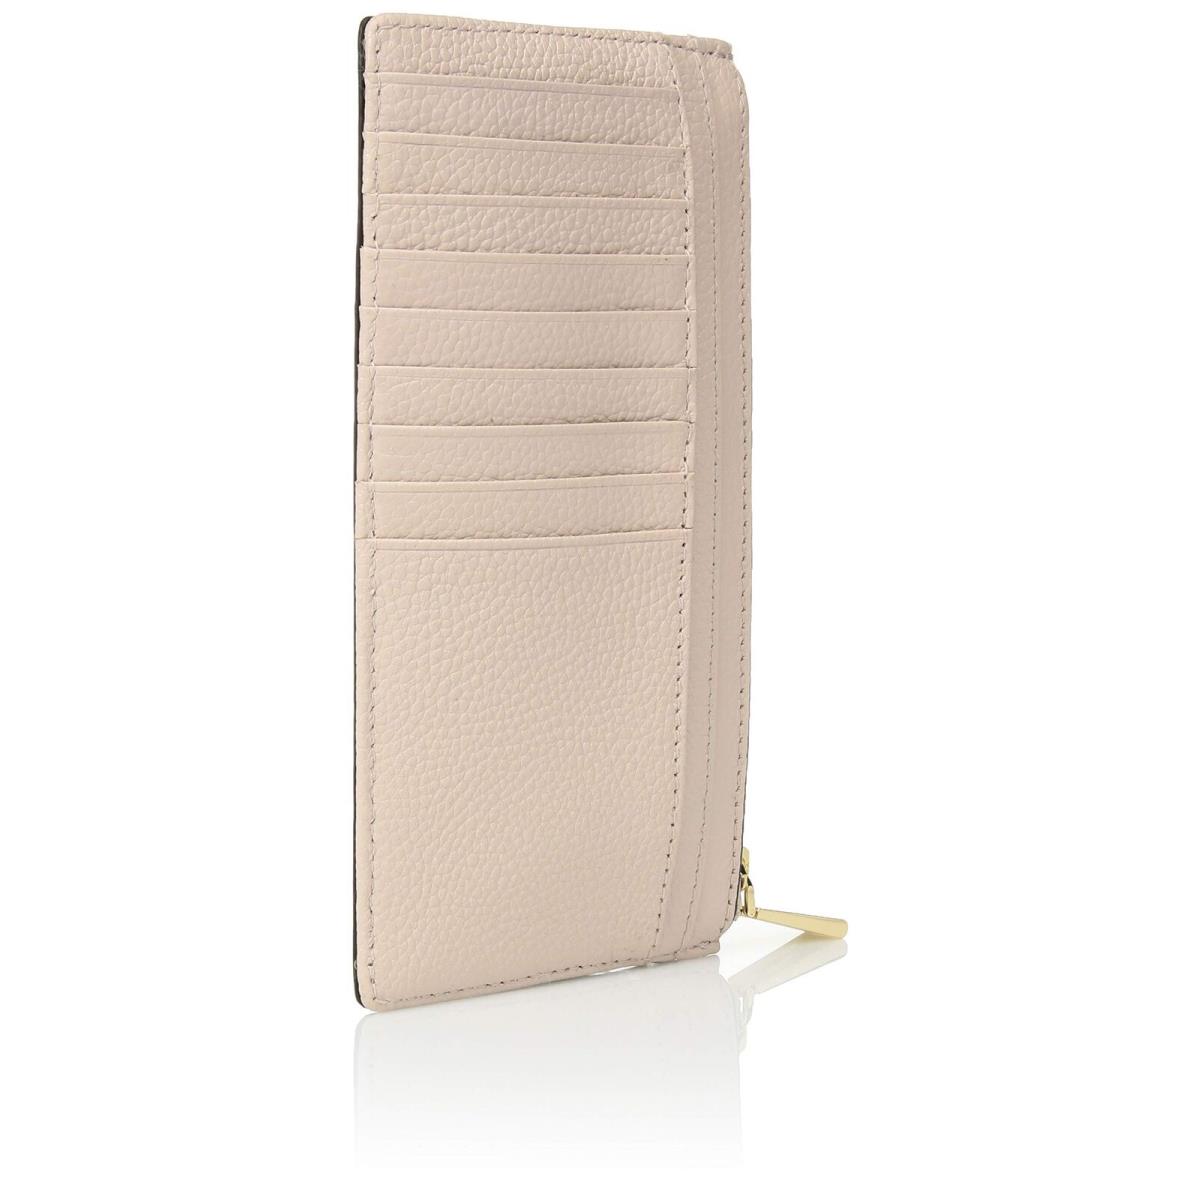 Michael Kors Large Pebbled Leather Slim Card Case Wristlet Wallet Soft Pink